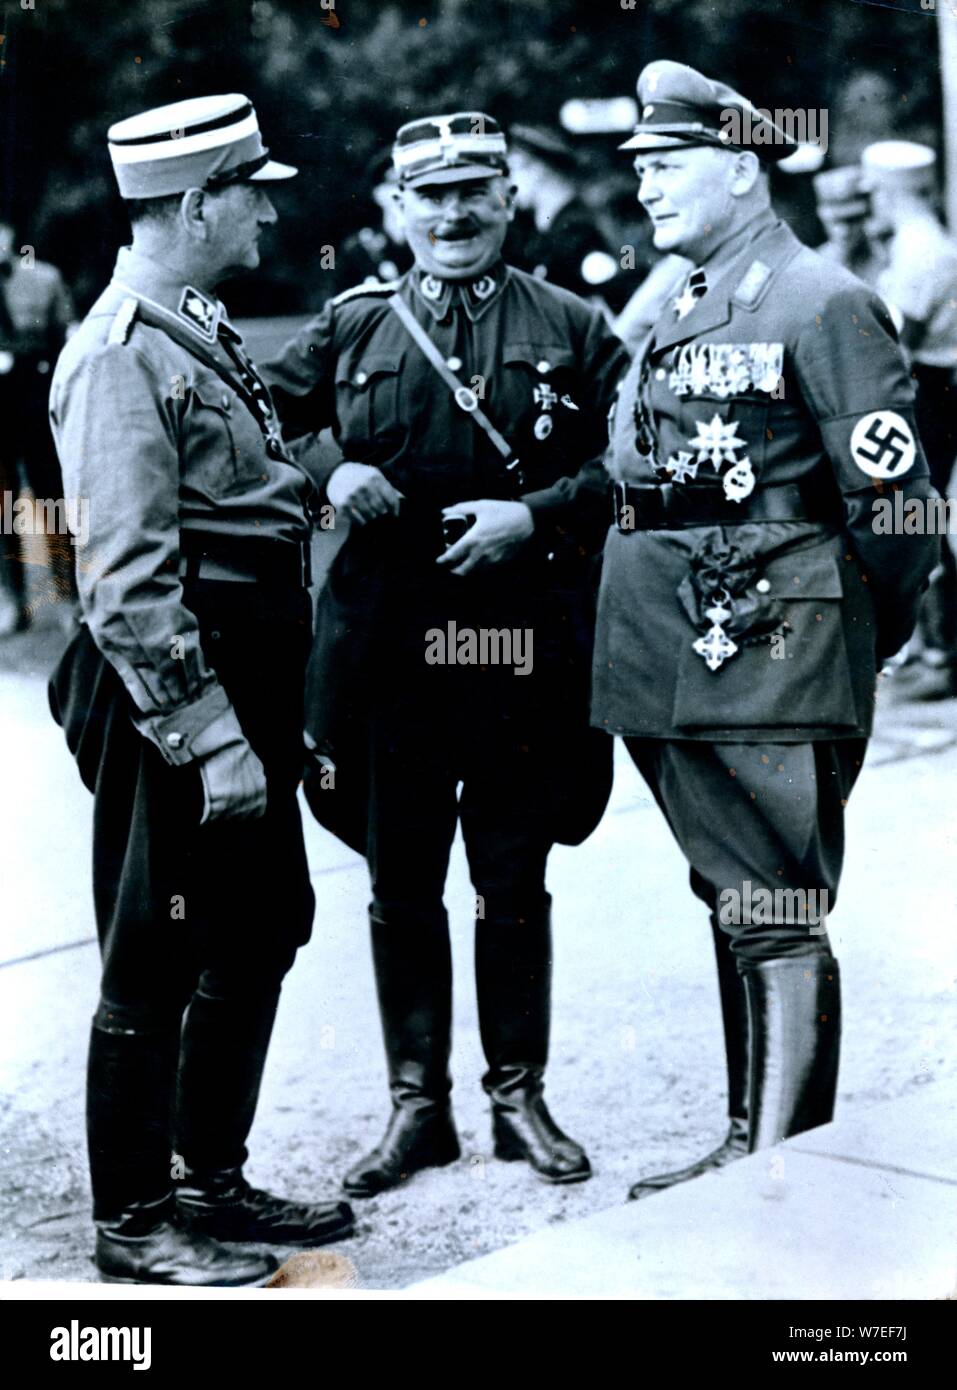 Hermann Göring, homme politique et chef militaire, c1930s-c1940s. Artiste : Inconnu Banque D'Images